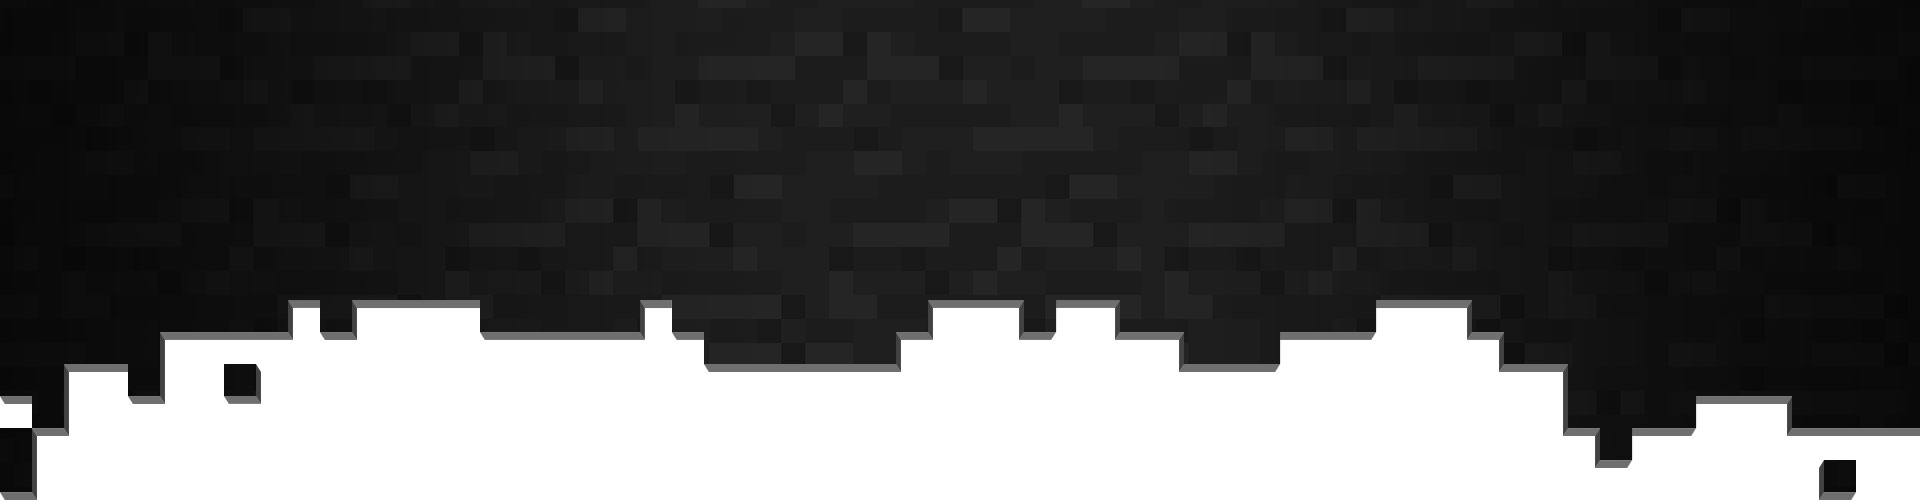 Černé a šedé pixely